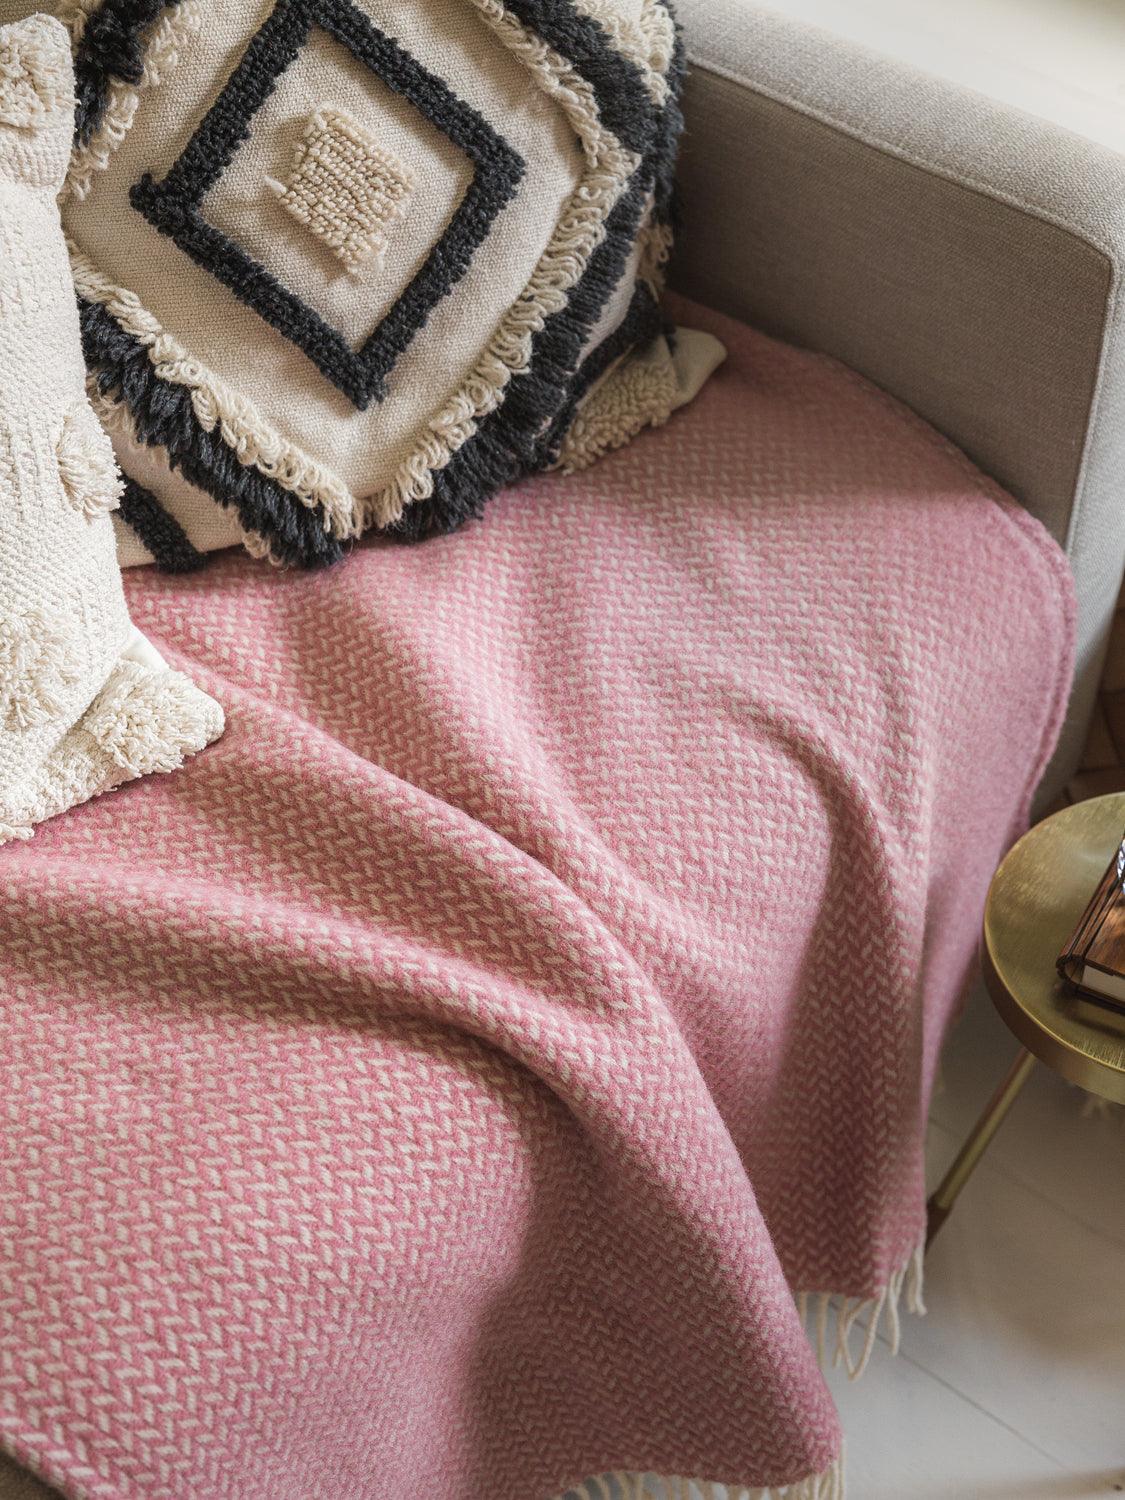 Pink herringbone wool blanket draped on sofa underneath two cushions.